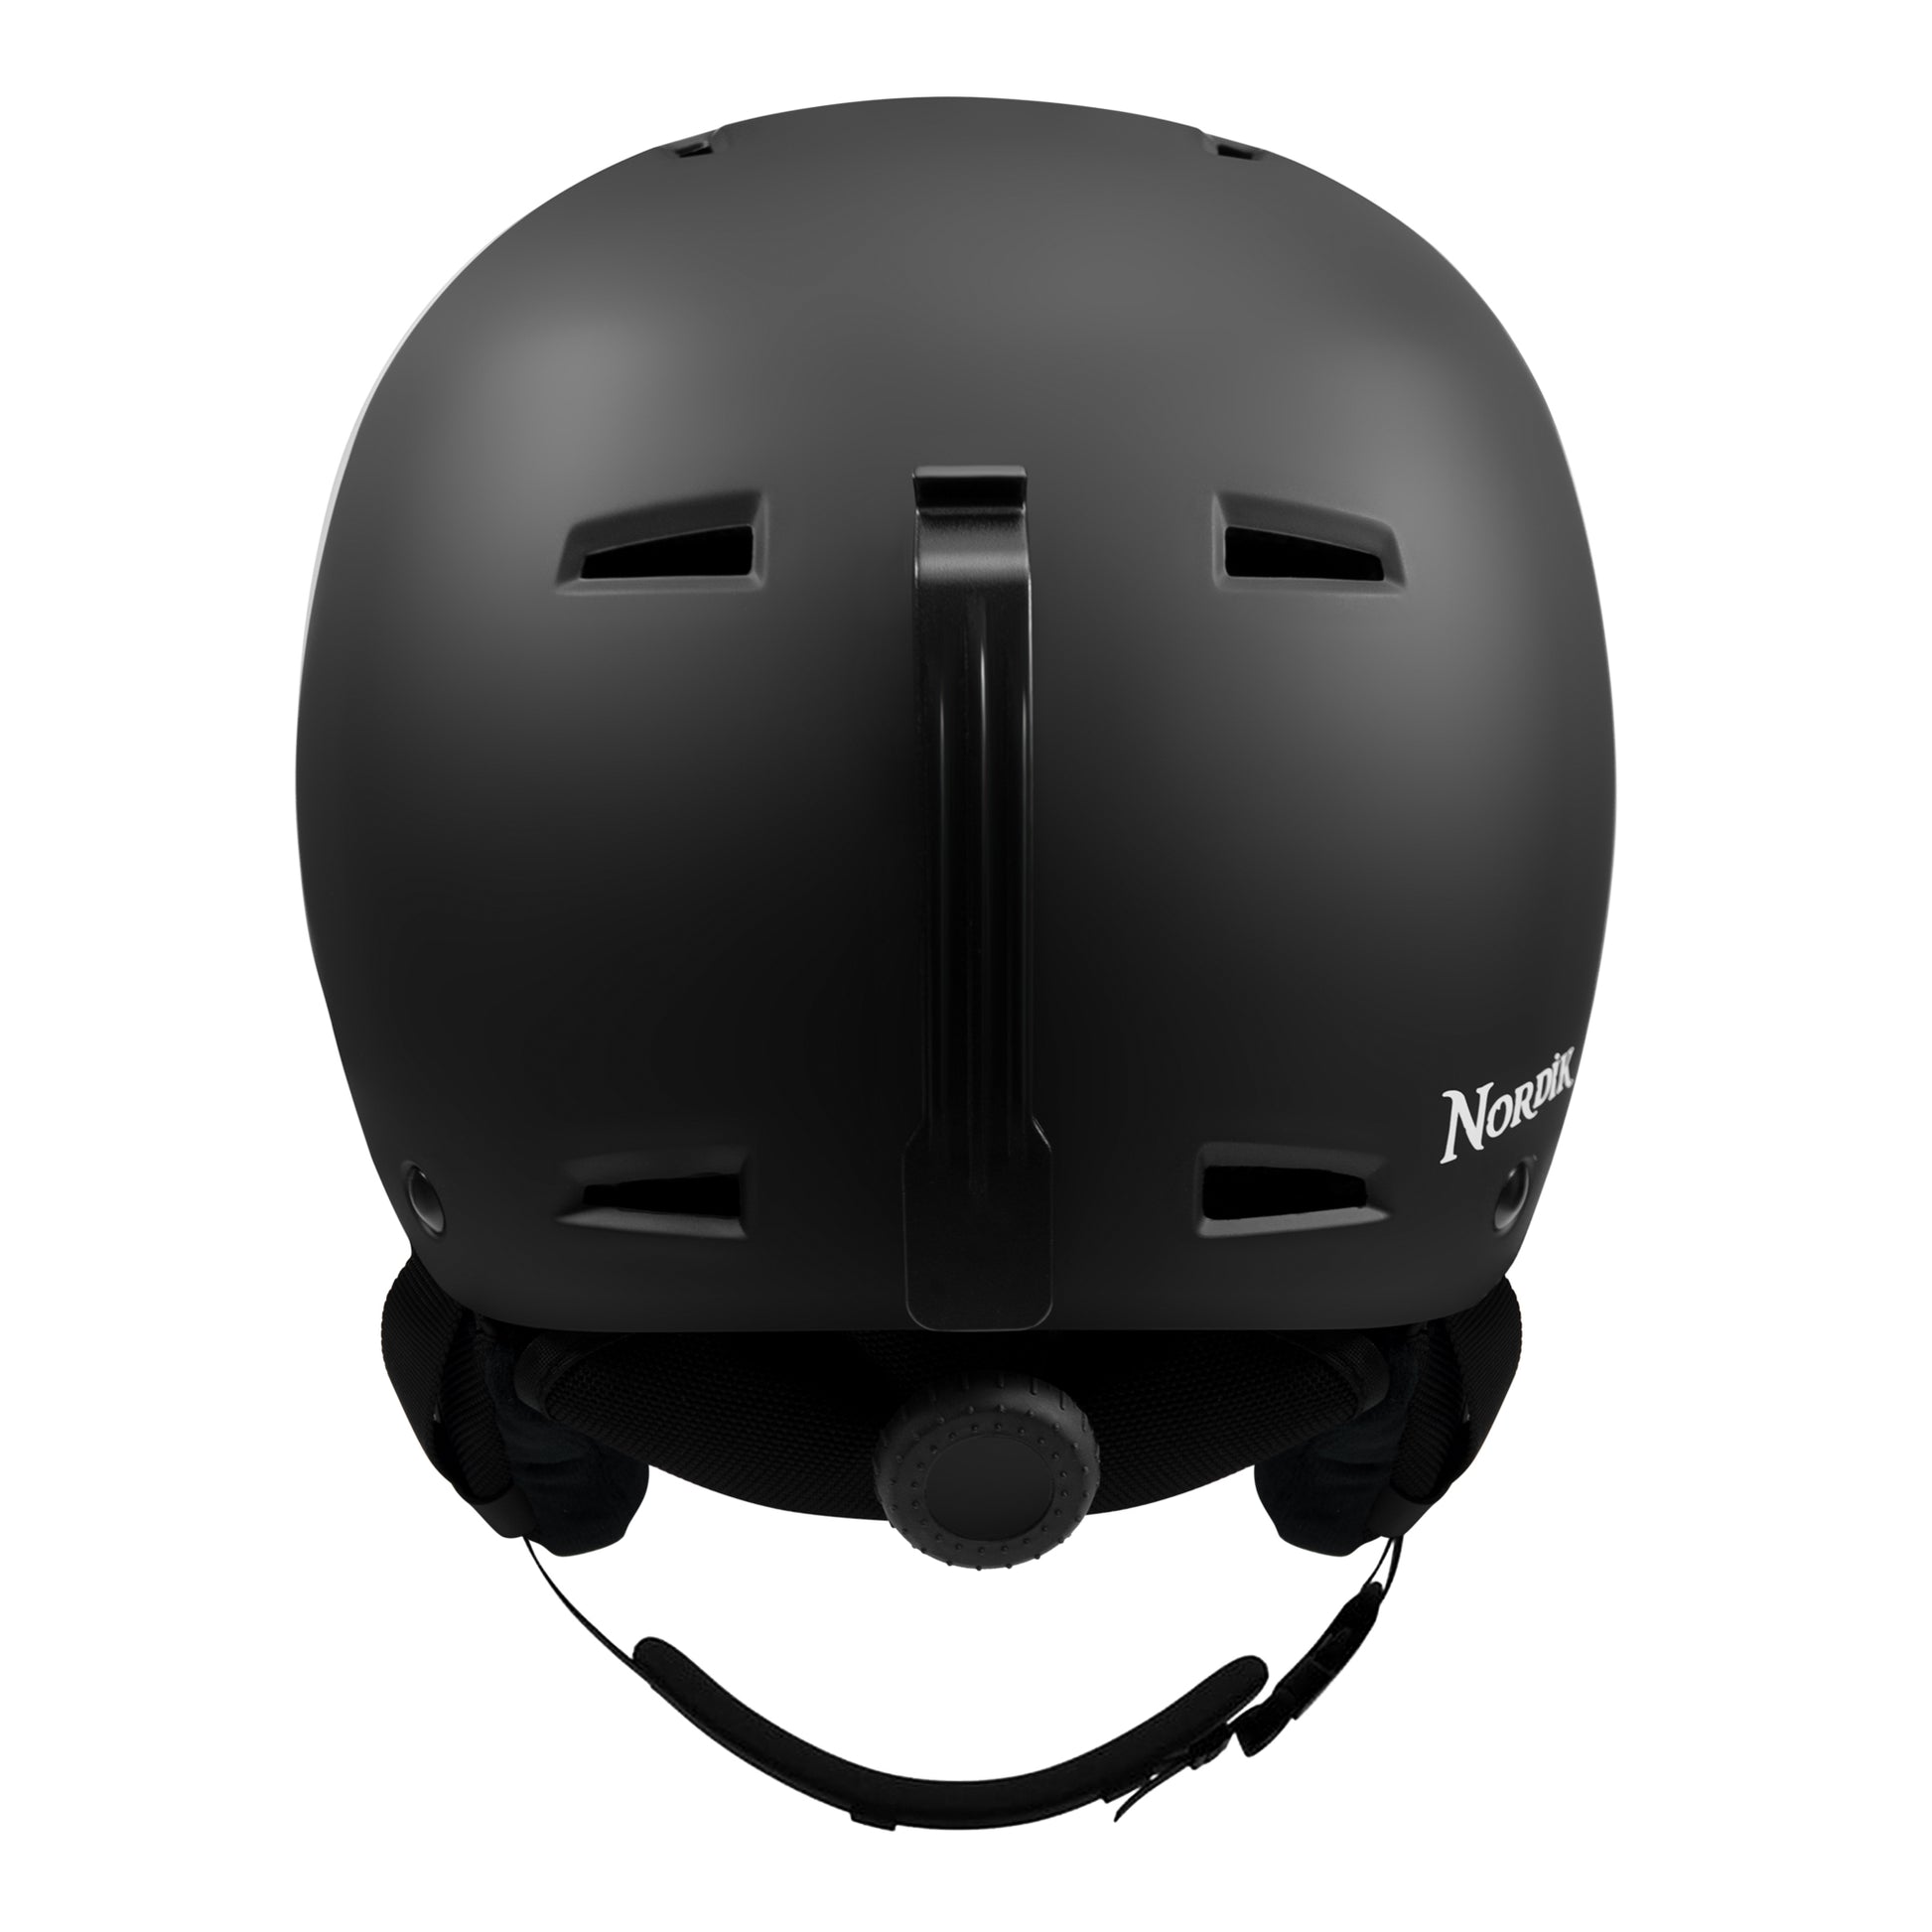 Visor ski snowboard helmet goggle visor helmet new bk Medium unisex black  New